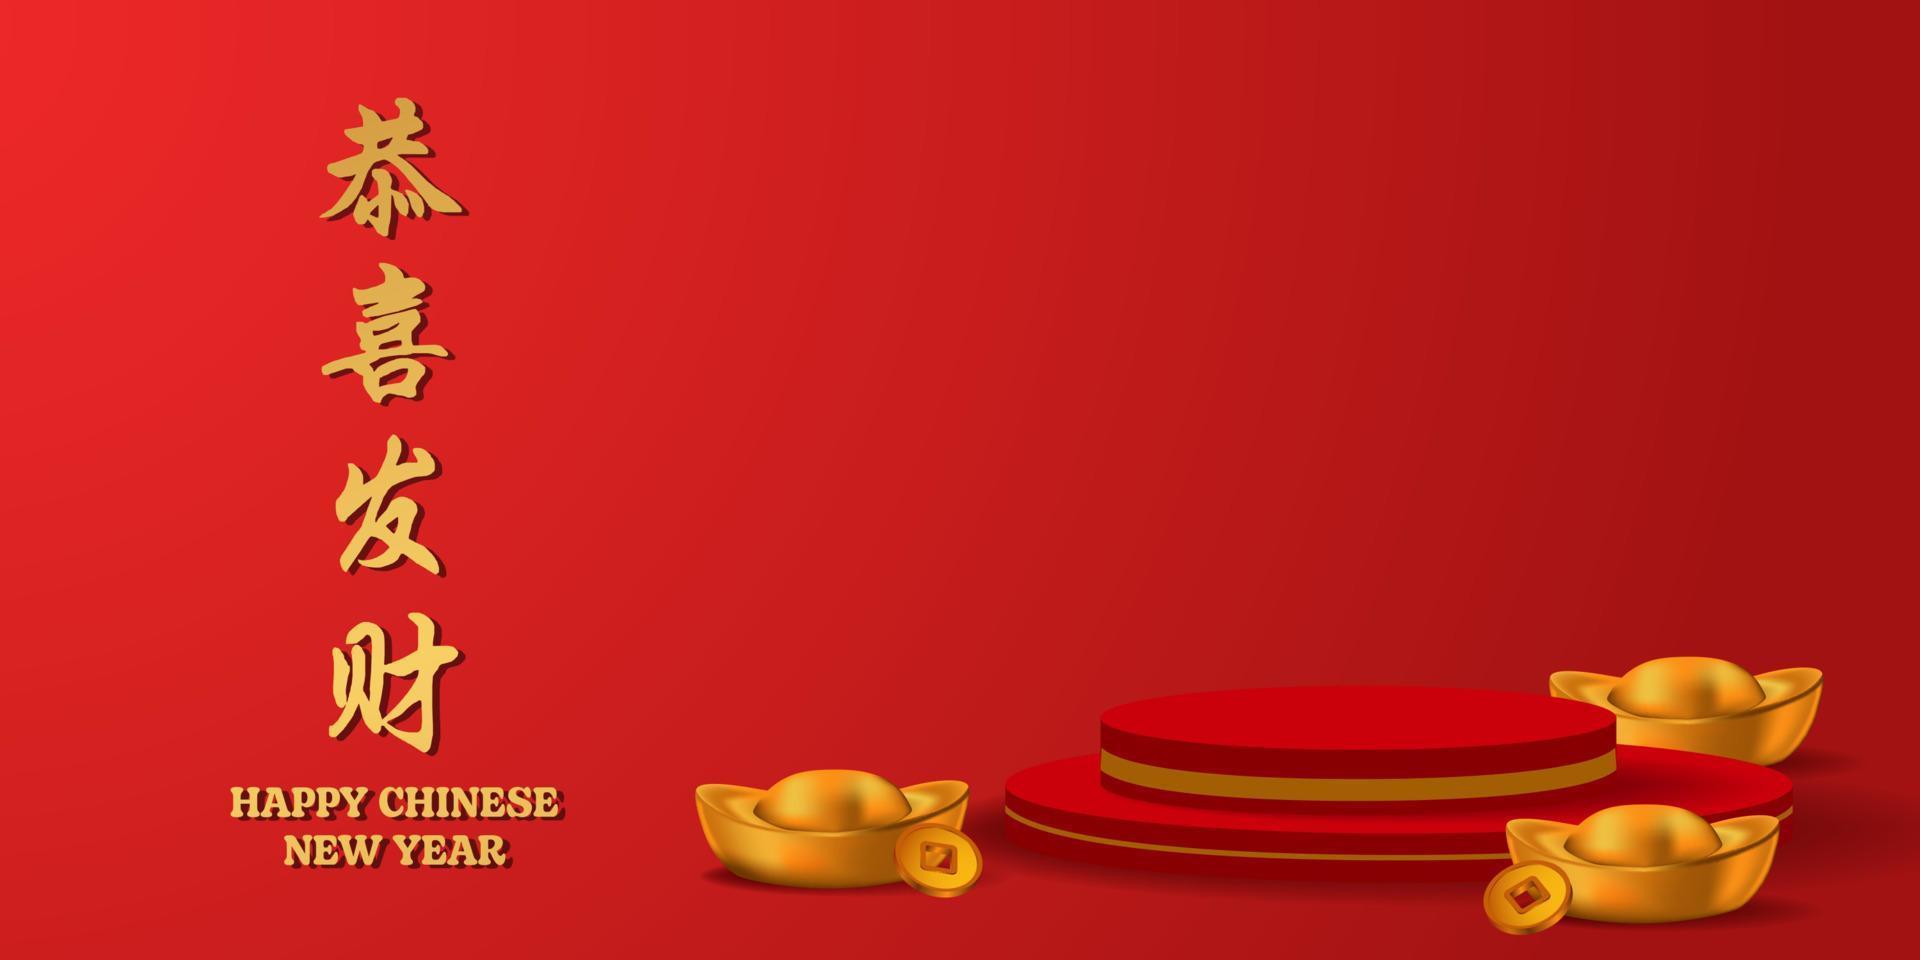 feliz Año Nuevo Chino. Exhibición del producto del podio del pedestal 3d con sycee lingote gold yuan bao golden poster banner template vector